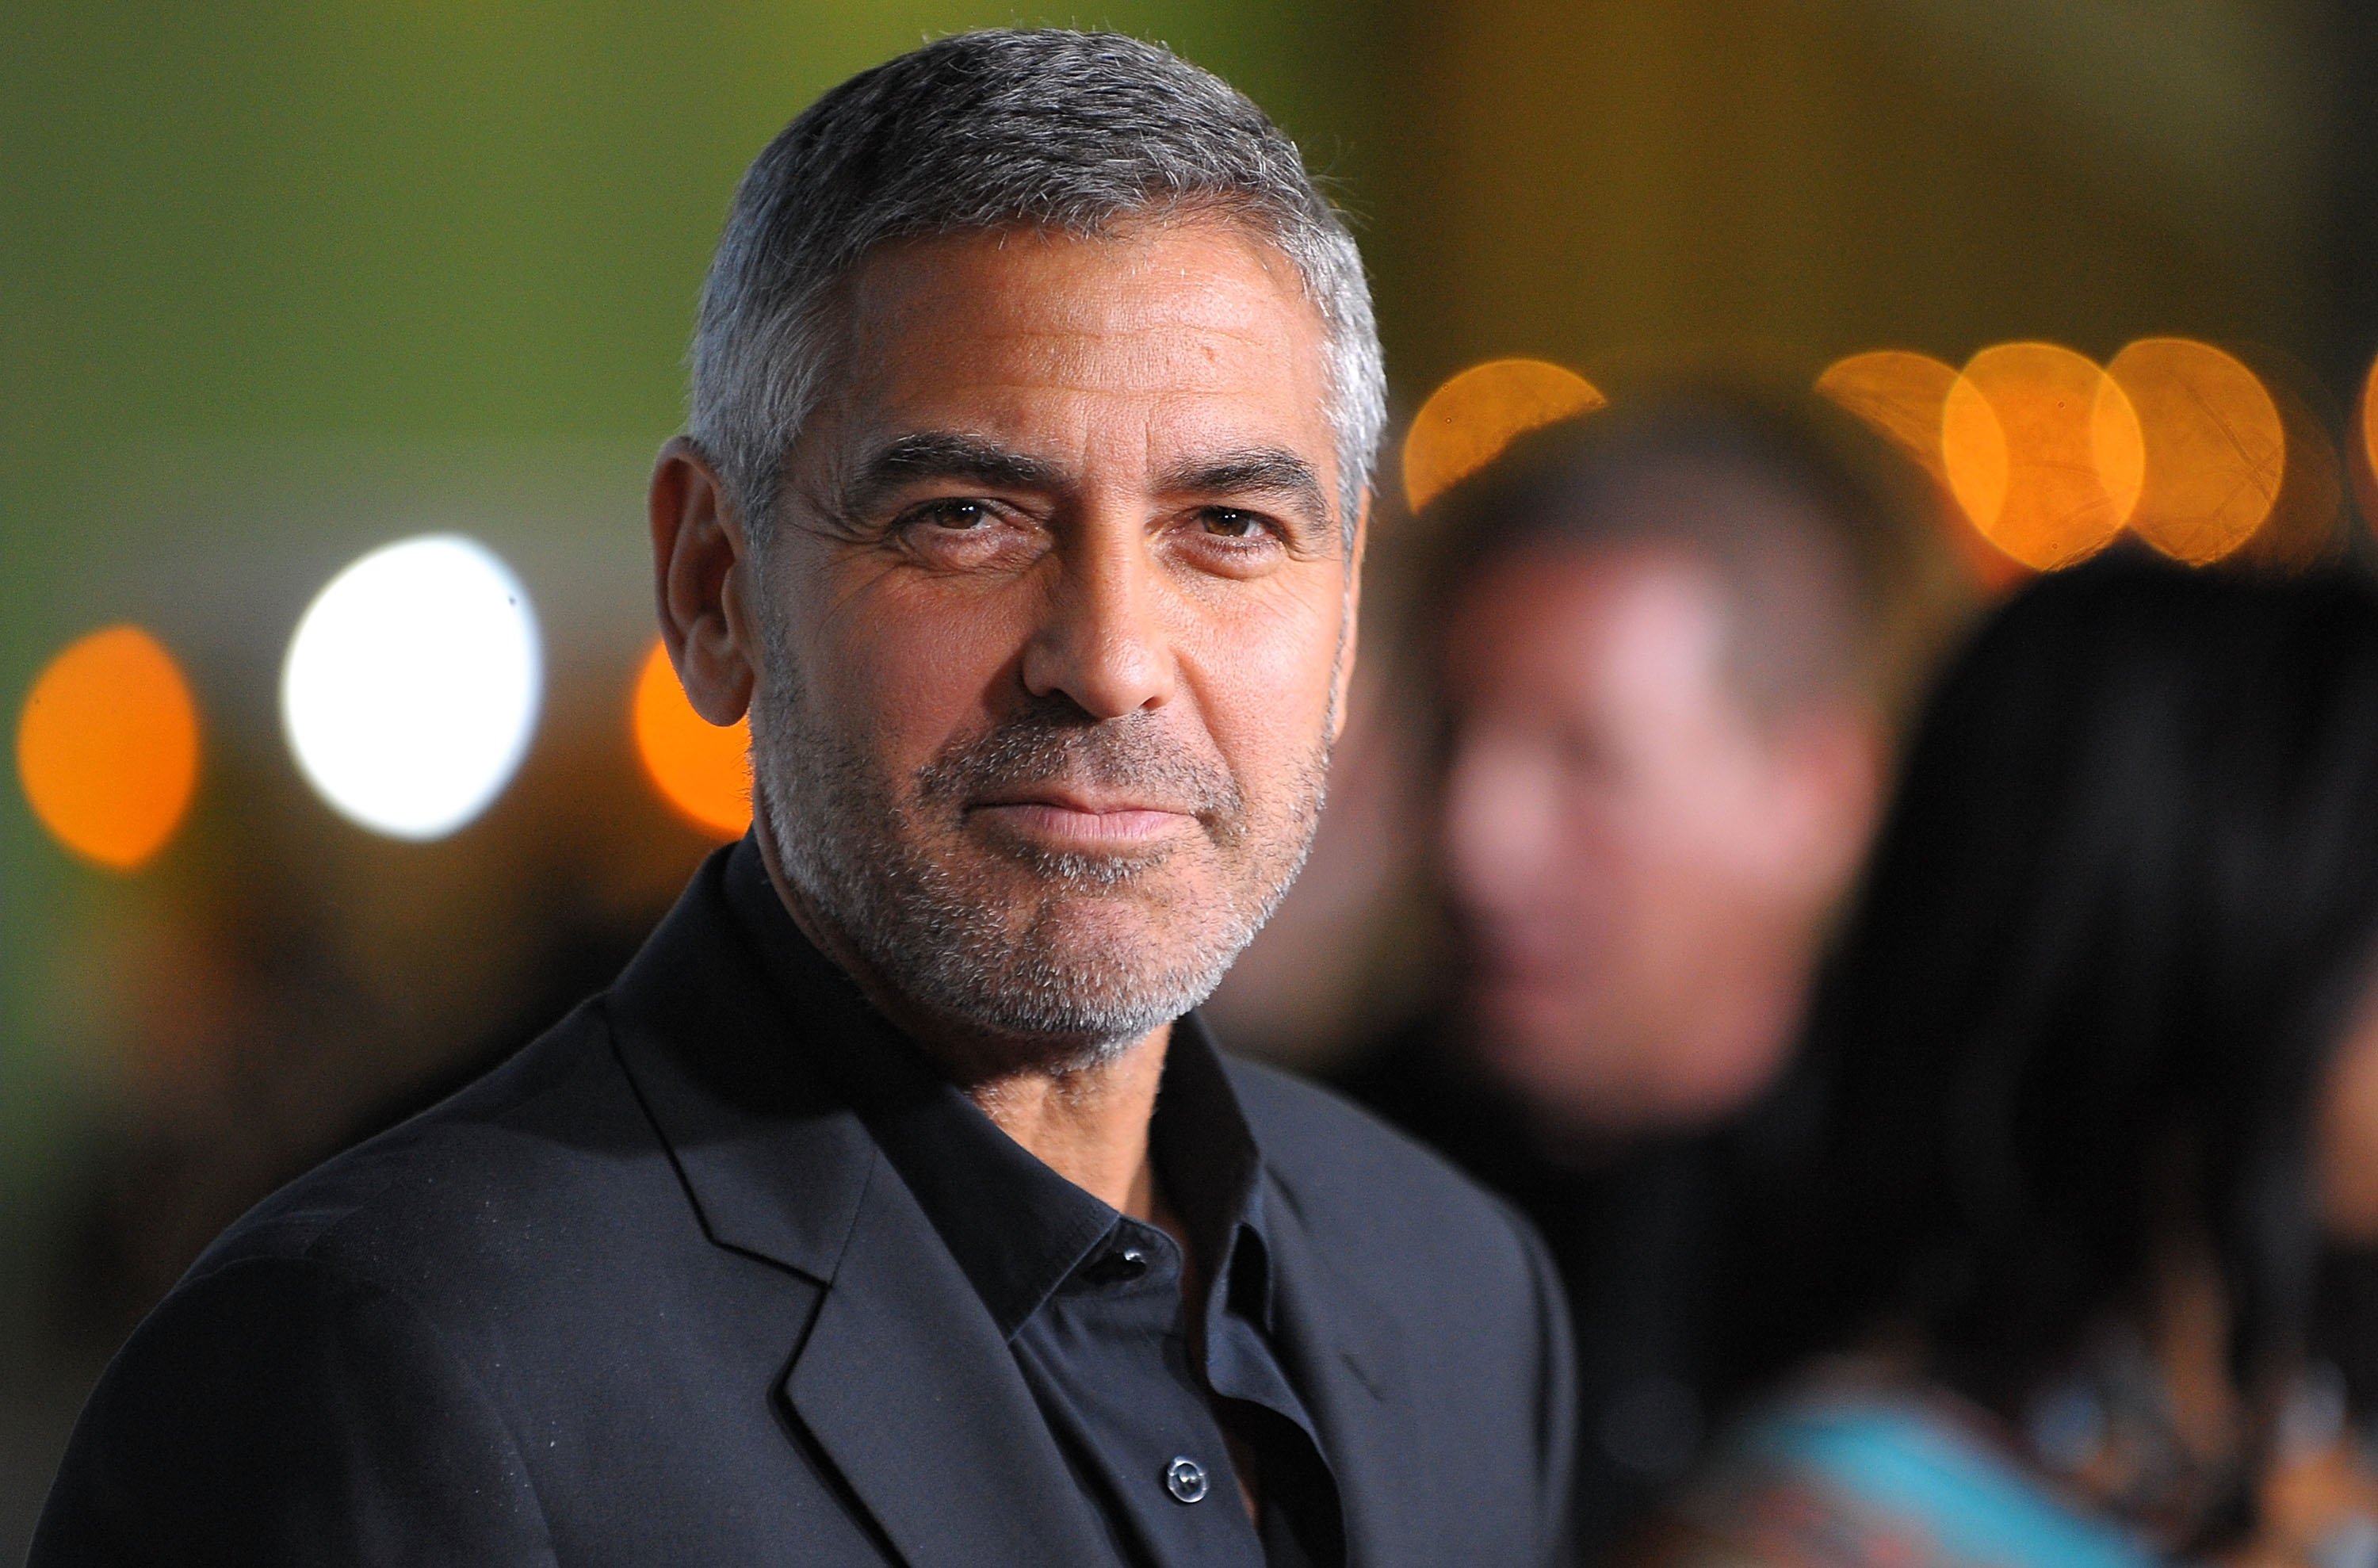 George Clooney en el estreno de "Up In The Air" de Paramount Pictures en el Mann Village Theatre, el 30 de noviembre de 2009, en Westwood, California. | Foto: Getty Images